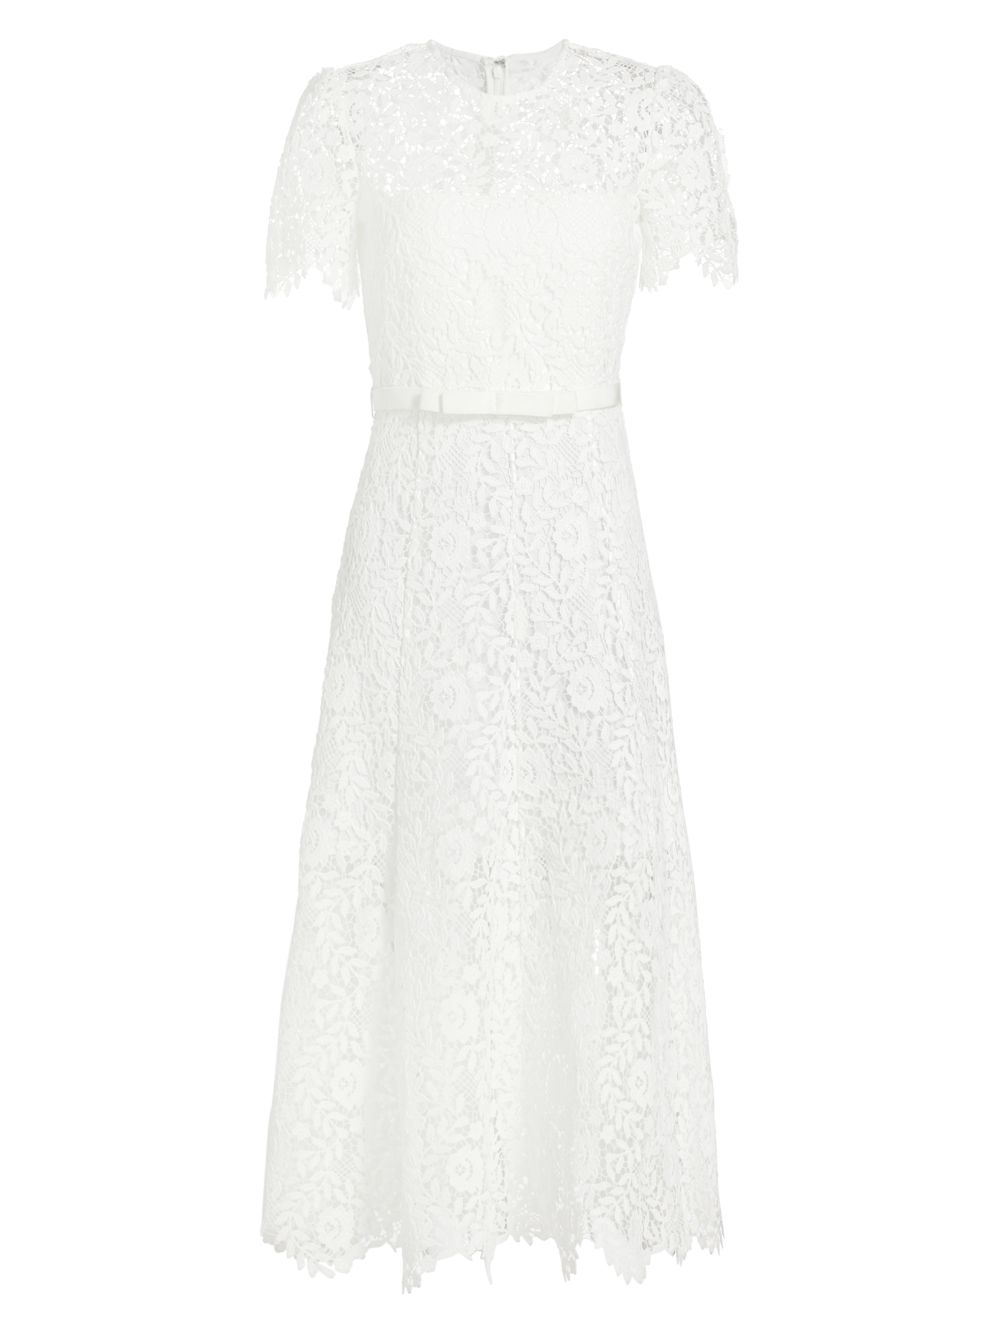 Кружевное платье-миди с короткими рукавами Self-Portrait, белый